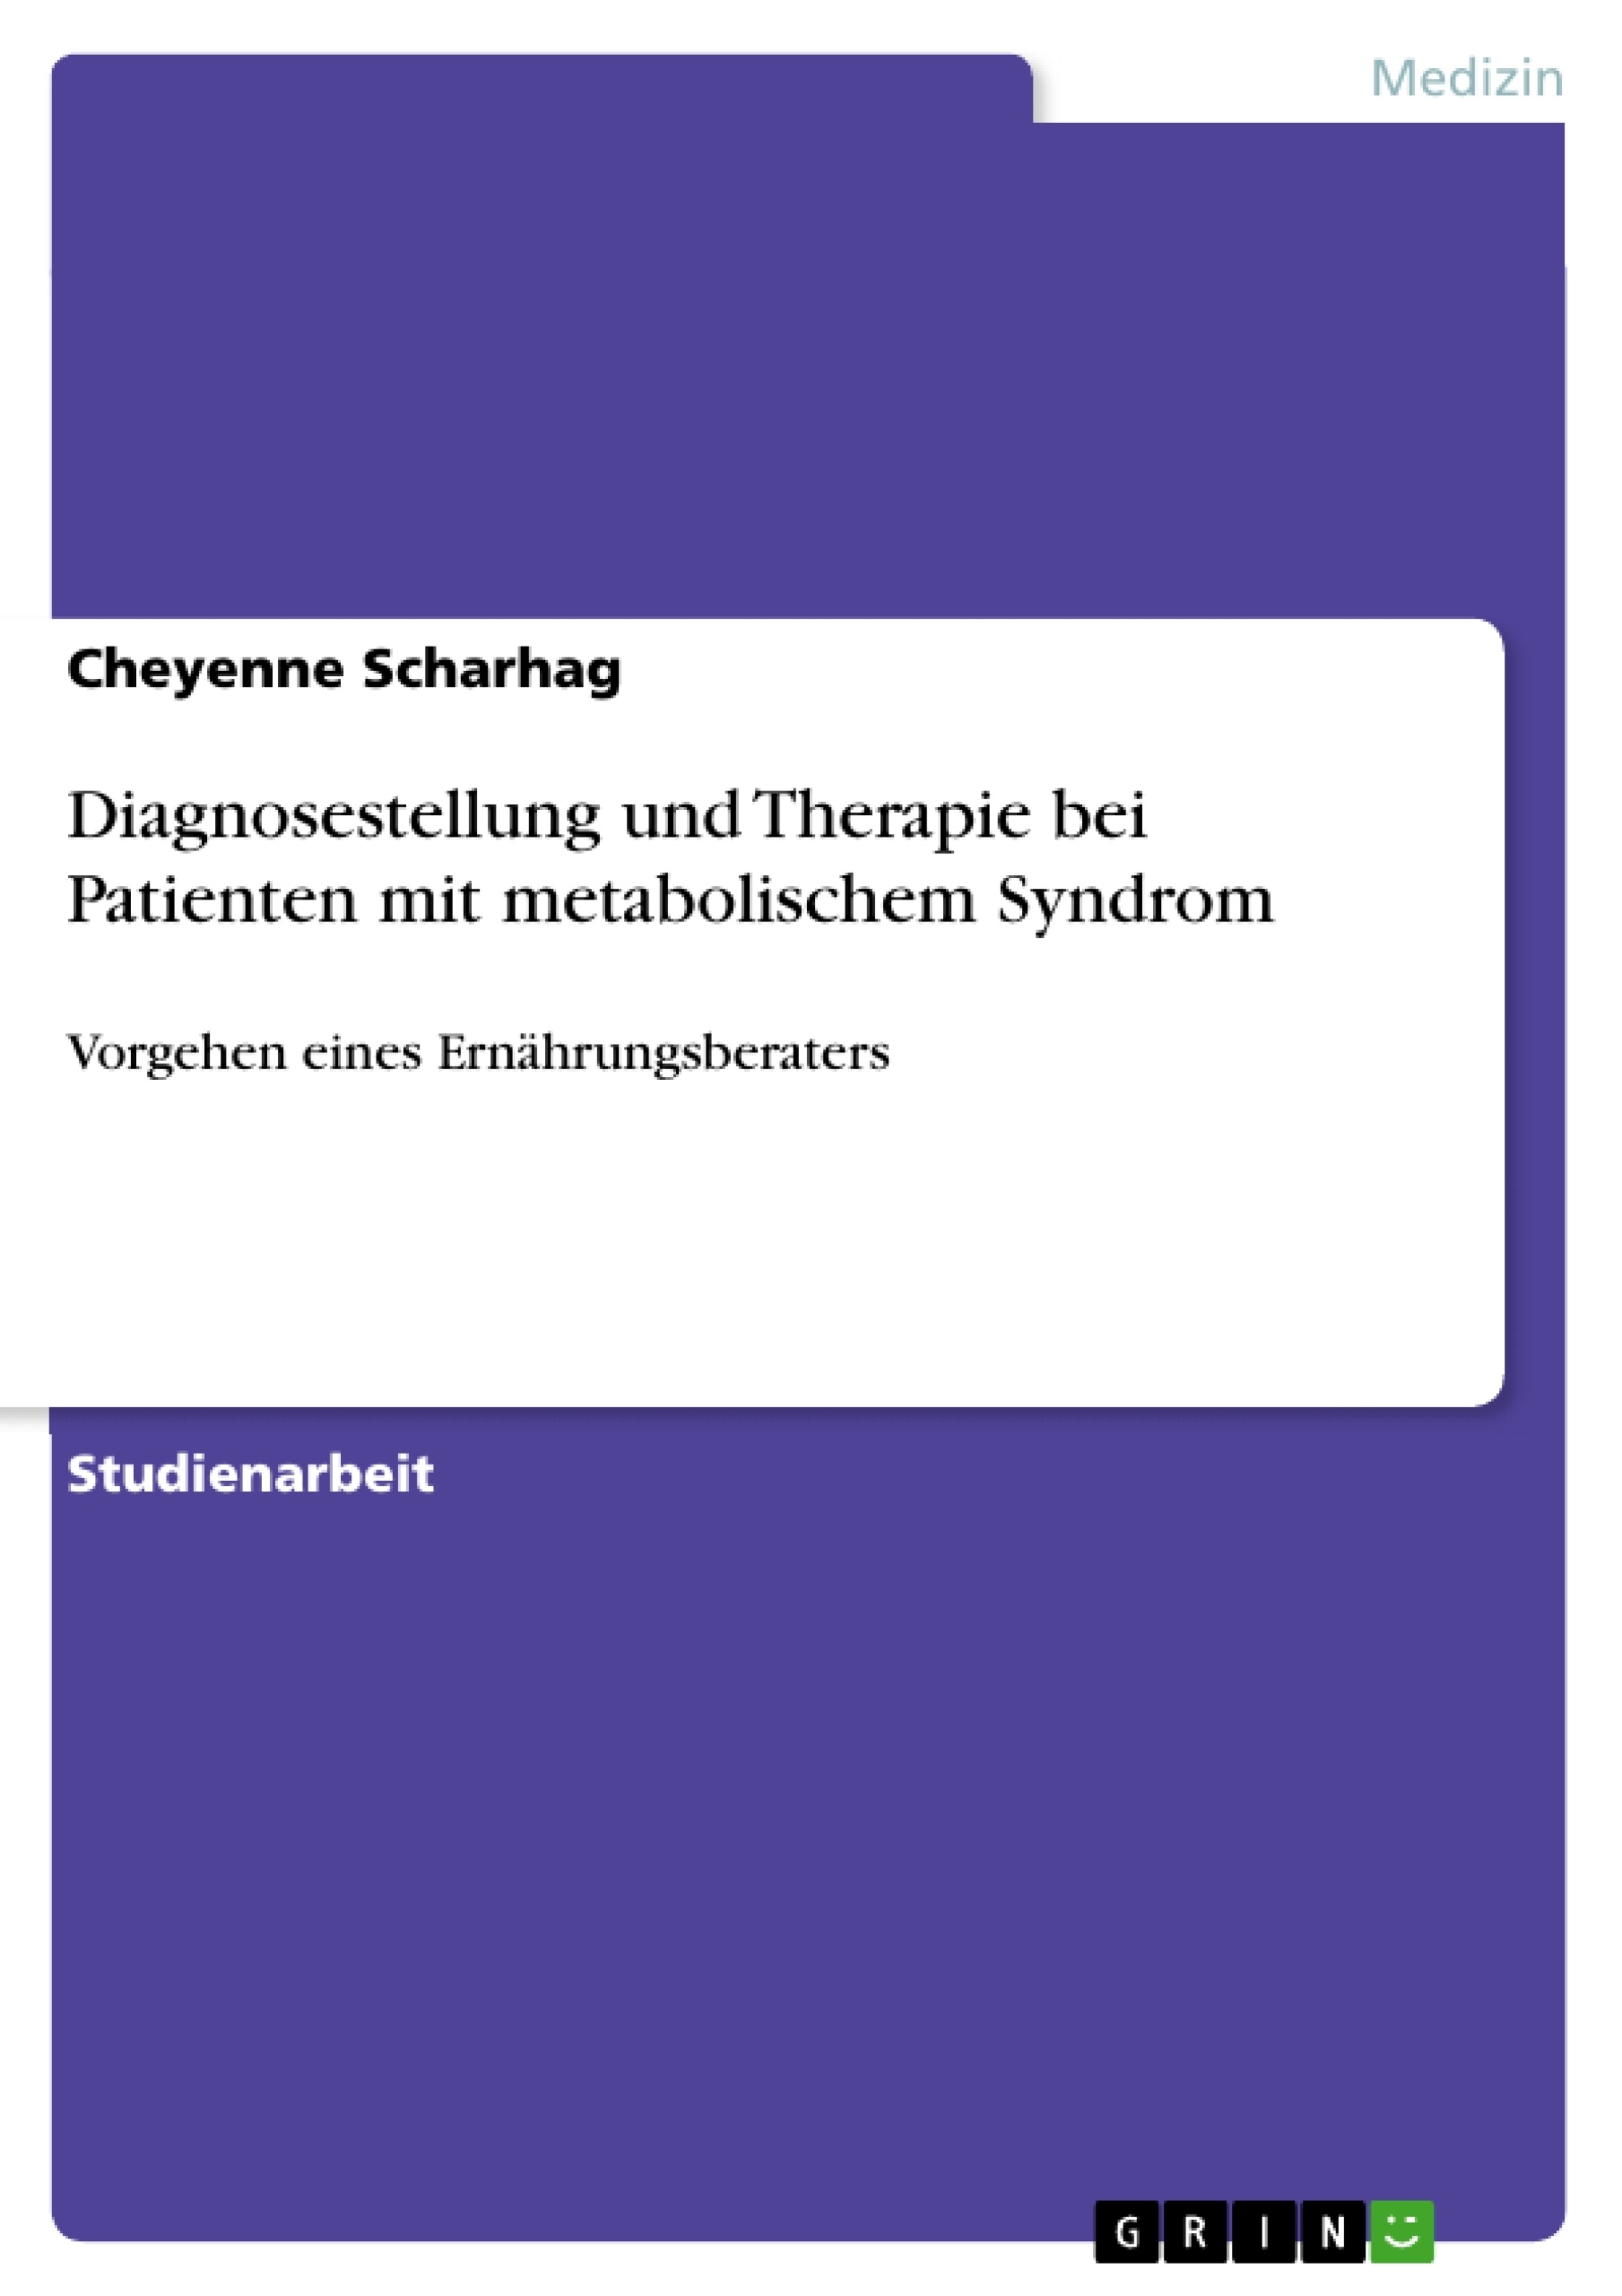 Title: Diagnosestellung und Therapie bei Patienten mit metabolischem Syndrom